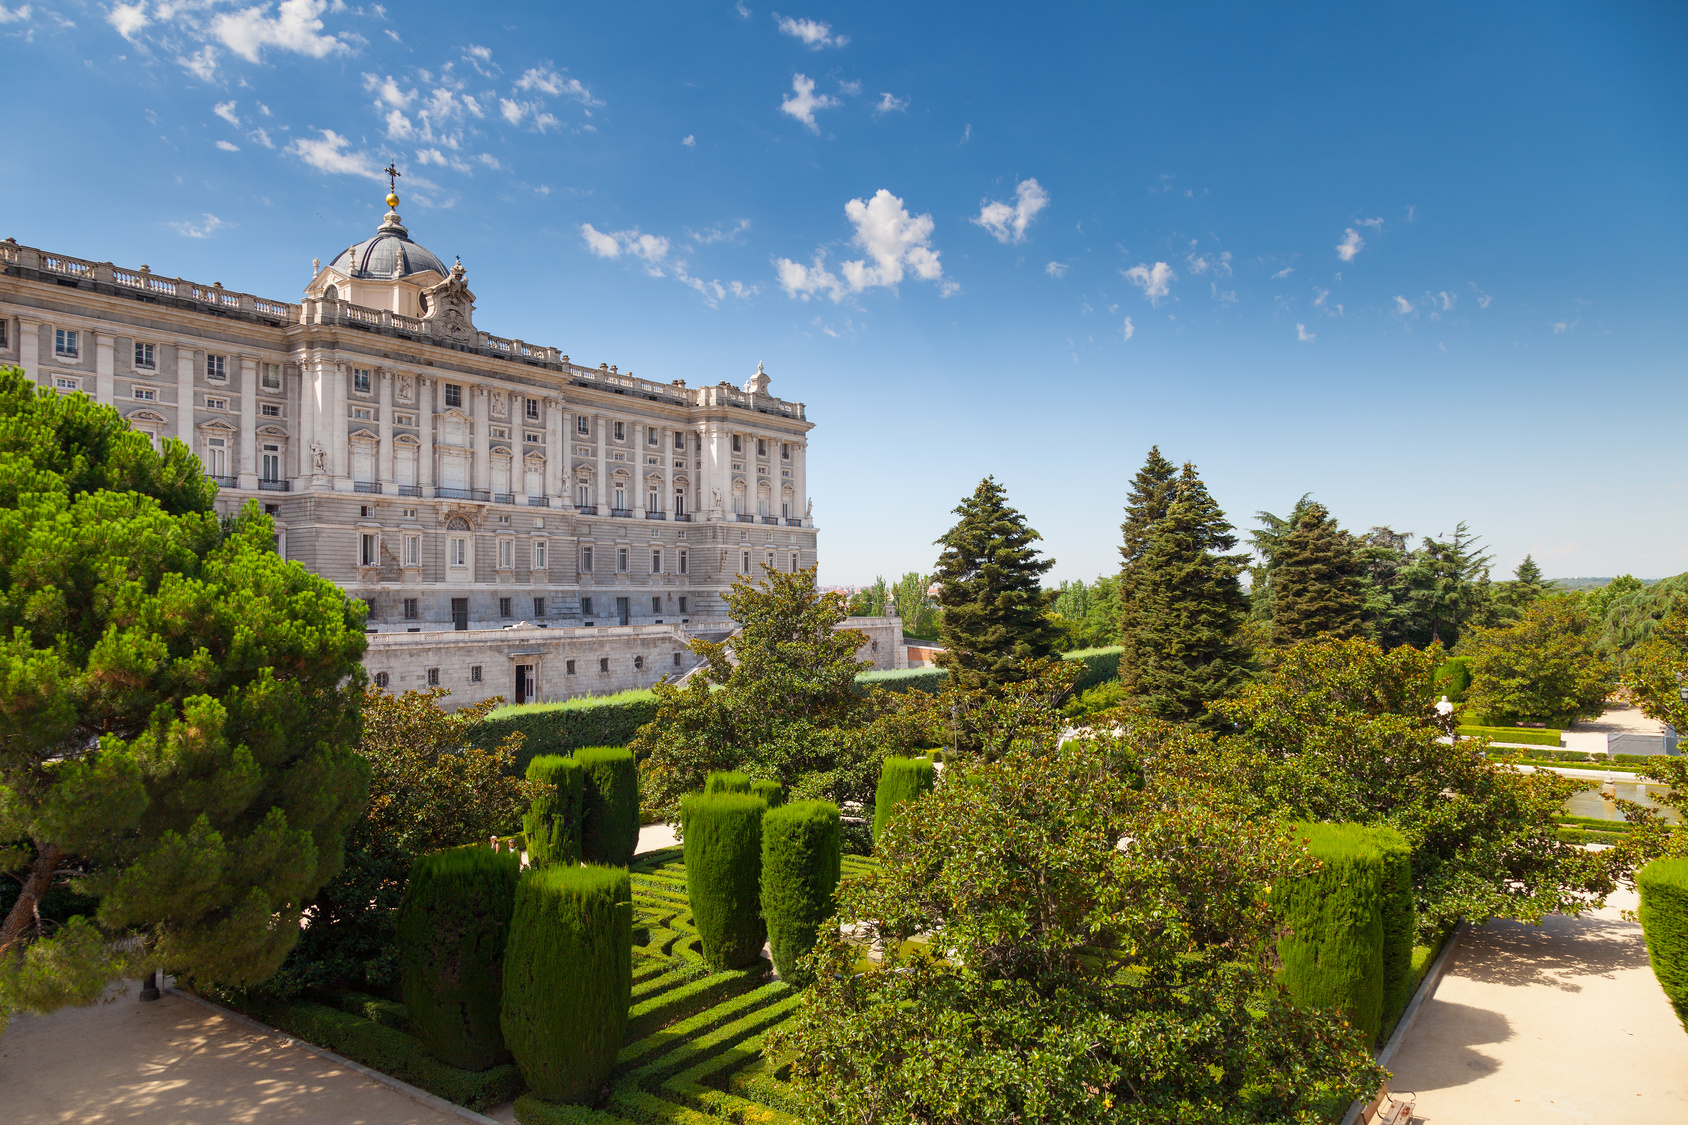 Facade of Madrid Royal Palace and Sabatini Gardens, Madrid, Spain